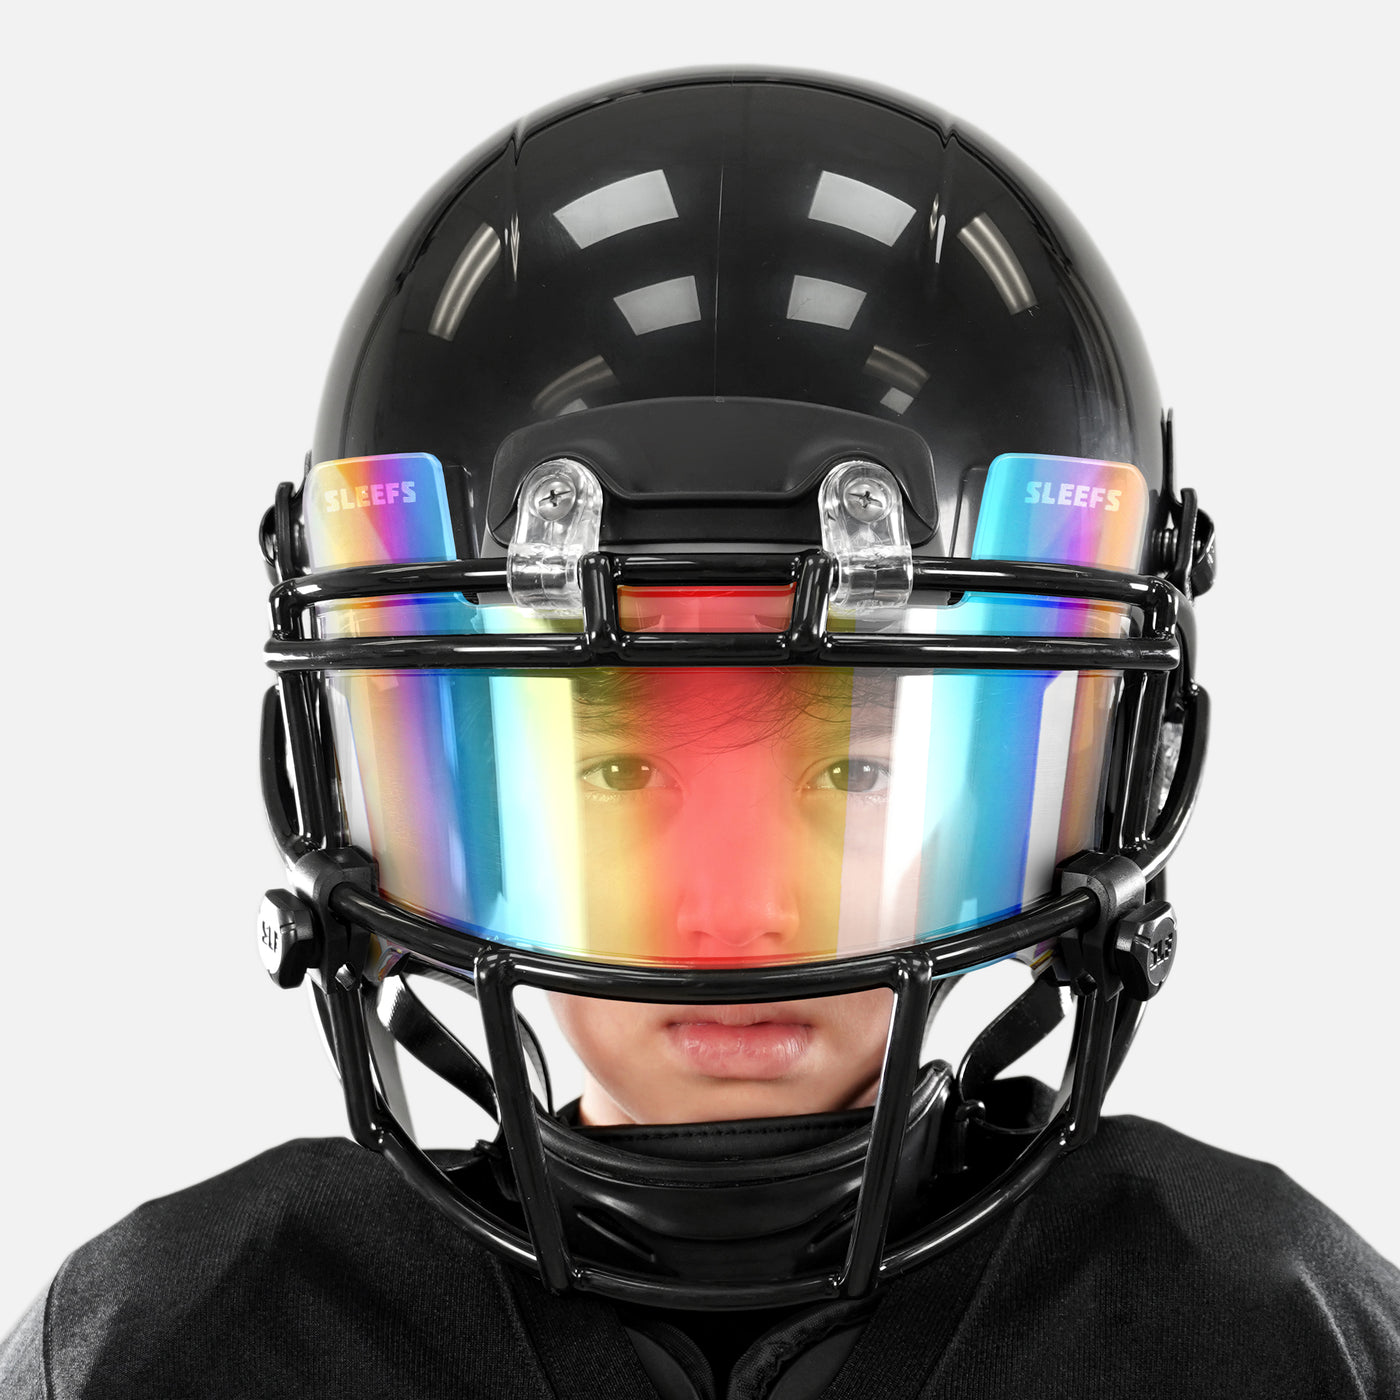 Borealis Clear Helmet Eye-Shield Visor for Kids